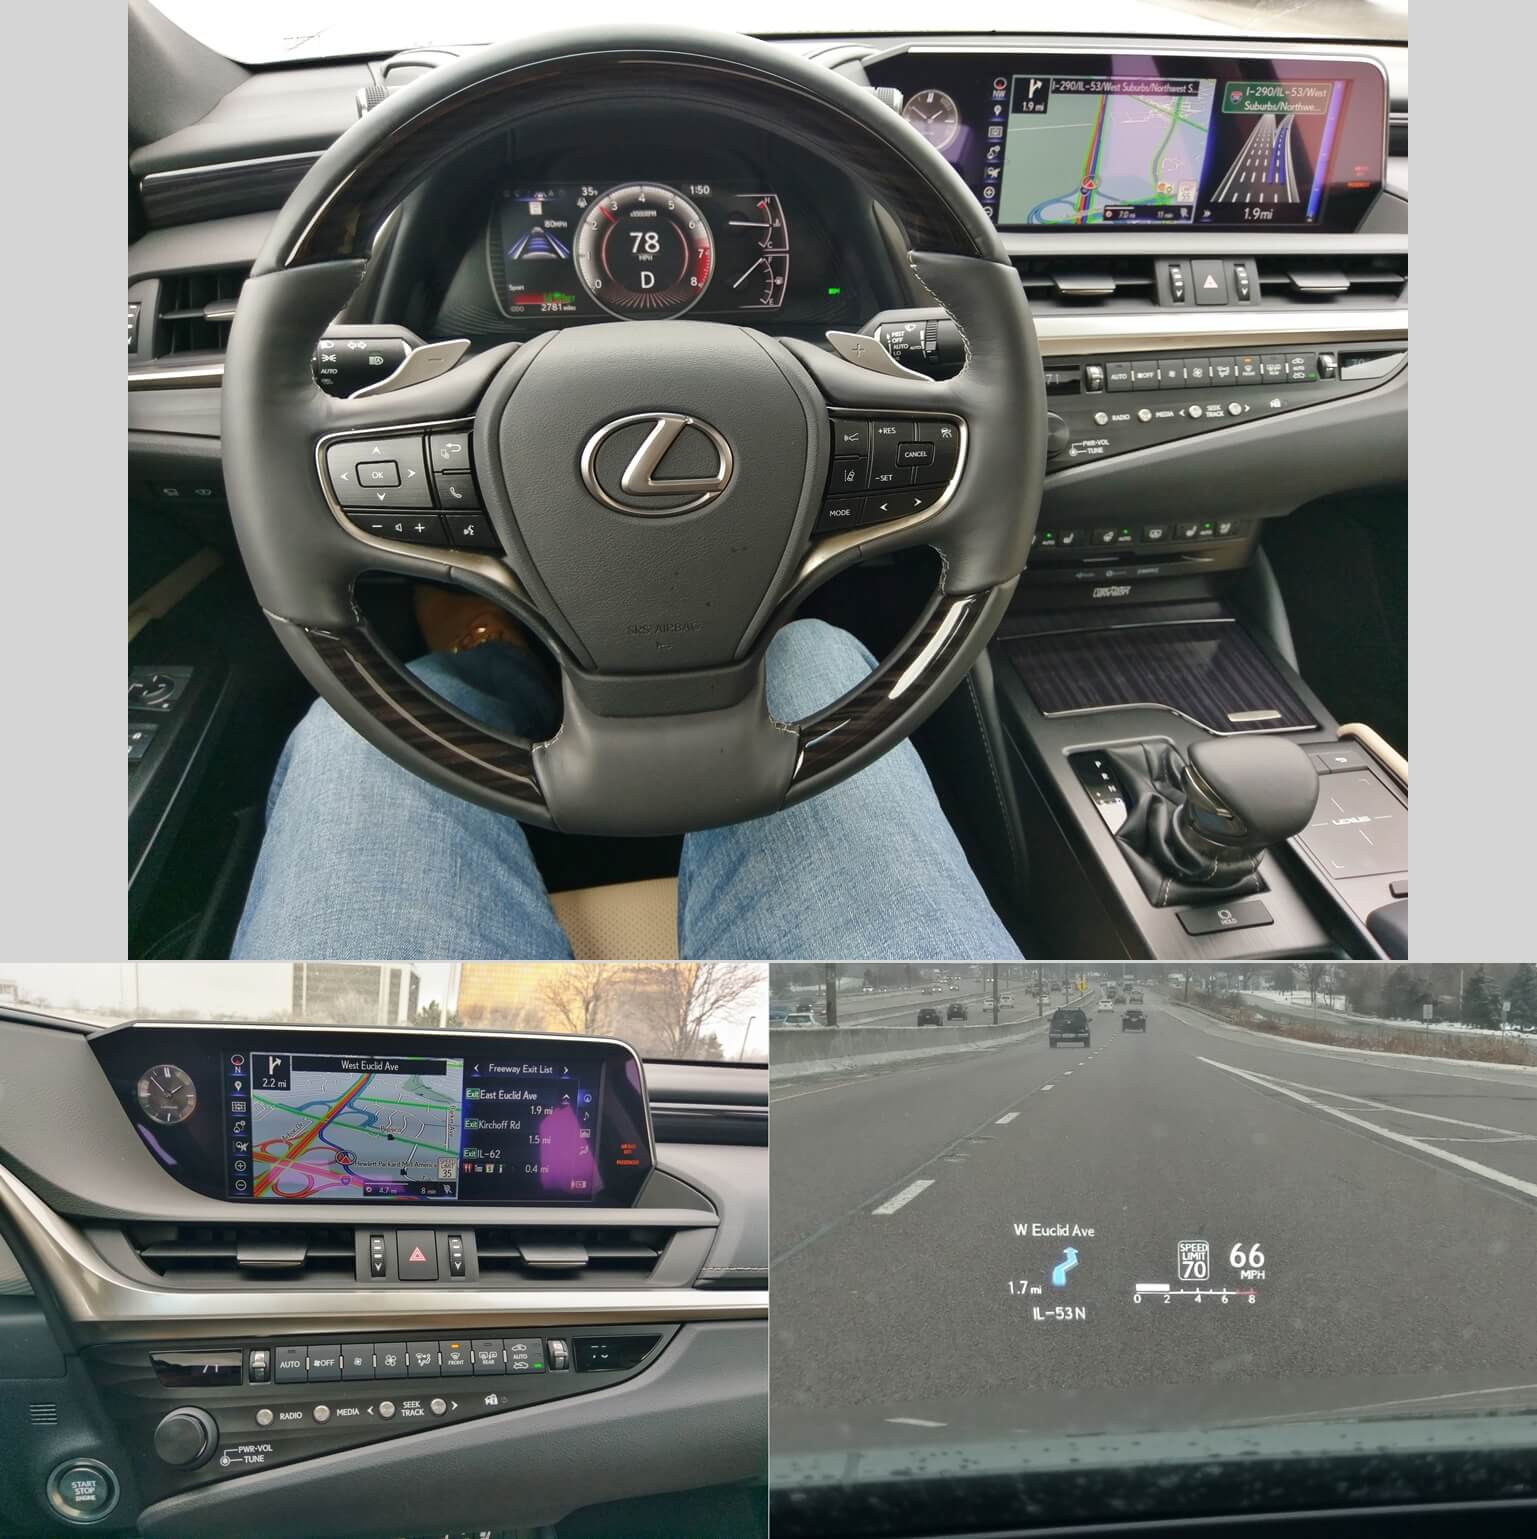 2019 Lexus ES 350: 12.3" LCD Lexus Remote Navigation split display w/ corresponding turn-by-turn 10.2" HUD display